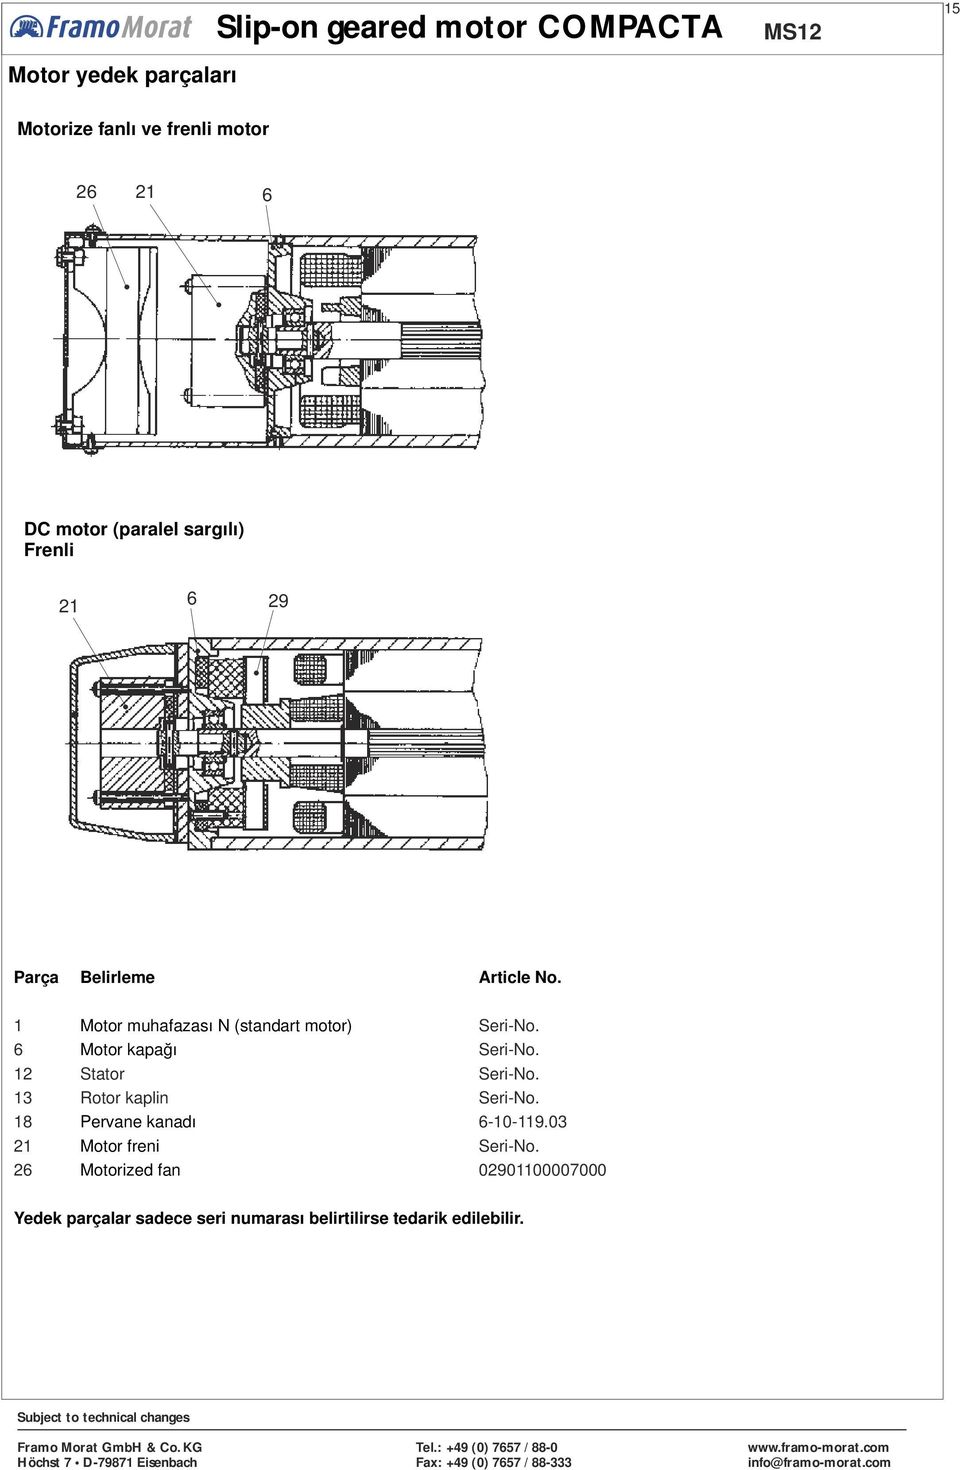 1 12 Motor muhafazası N (standart motor) Motor kapağı Stator 13 Rotor kaplin 18 21 2